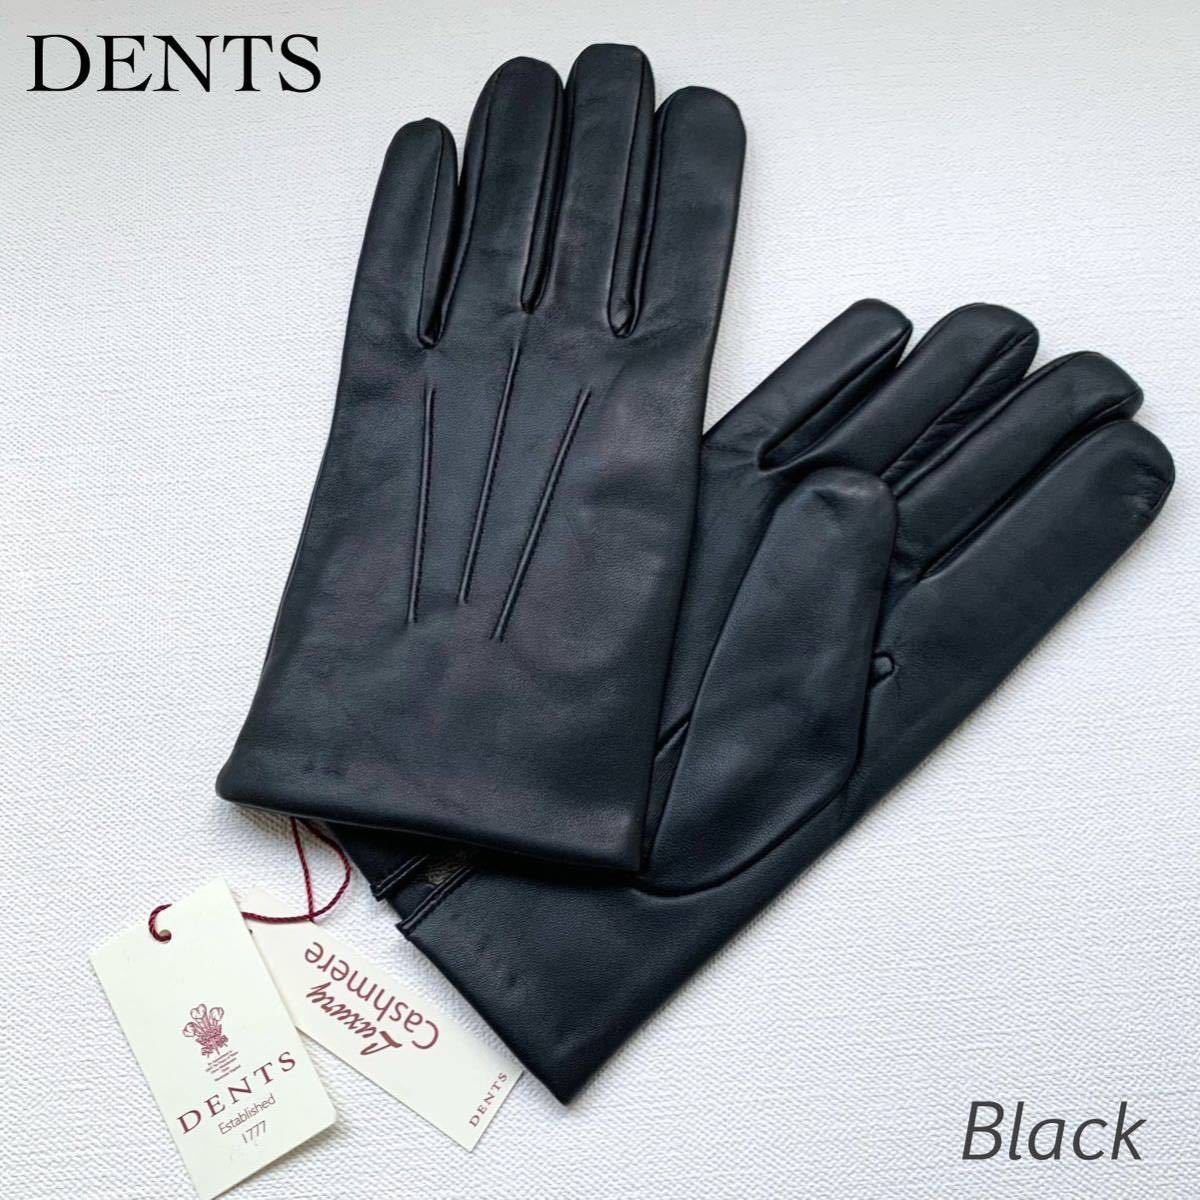 新品 DENTS デンツ ヘアシープ レザー グローブ 5-9001 メンズ 革手袋 黒 ブラック カシミヤ100% ライニング 羊革 サイズ9